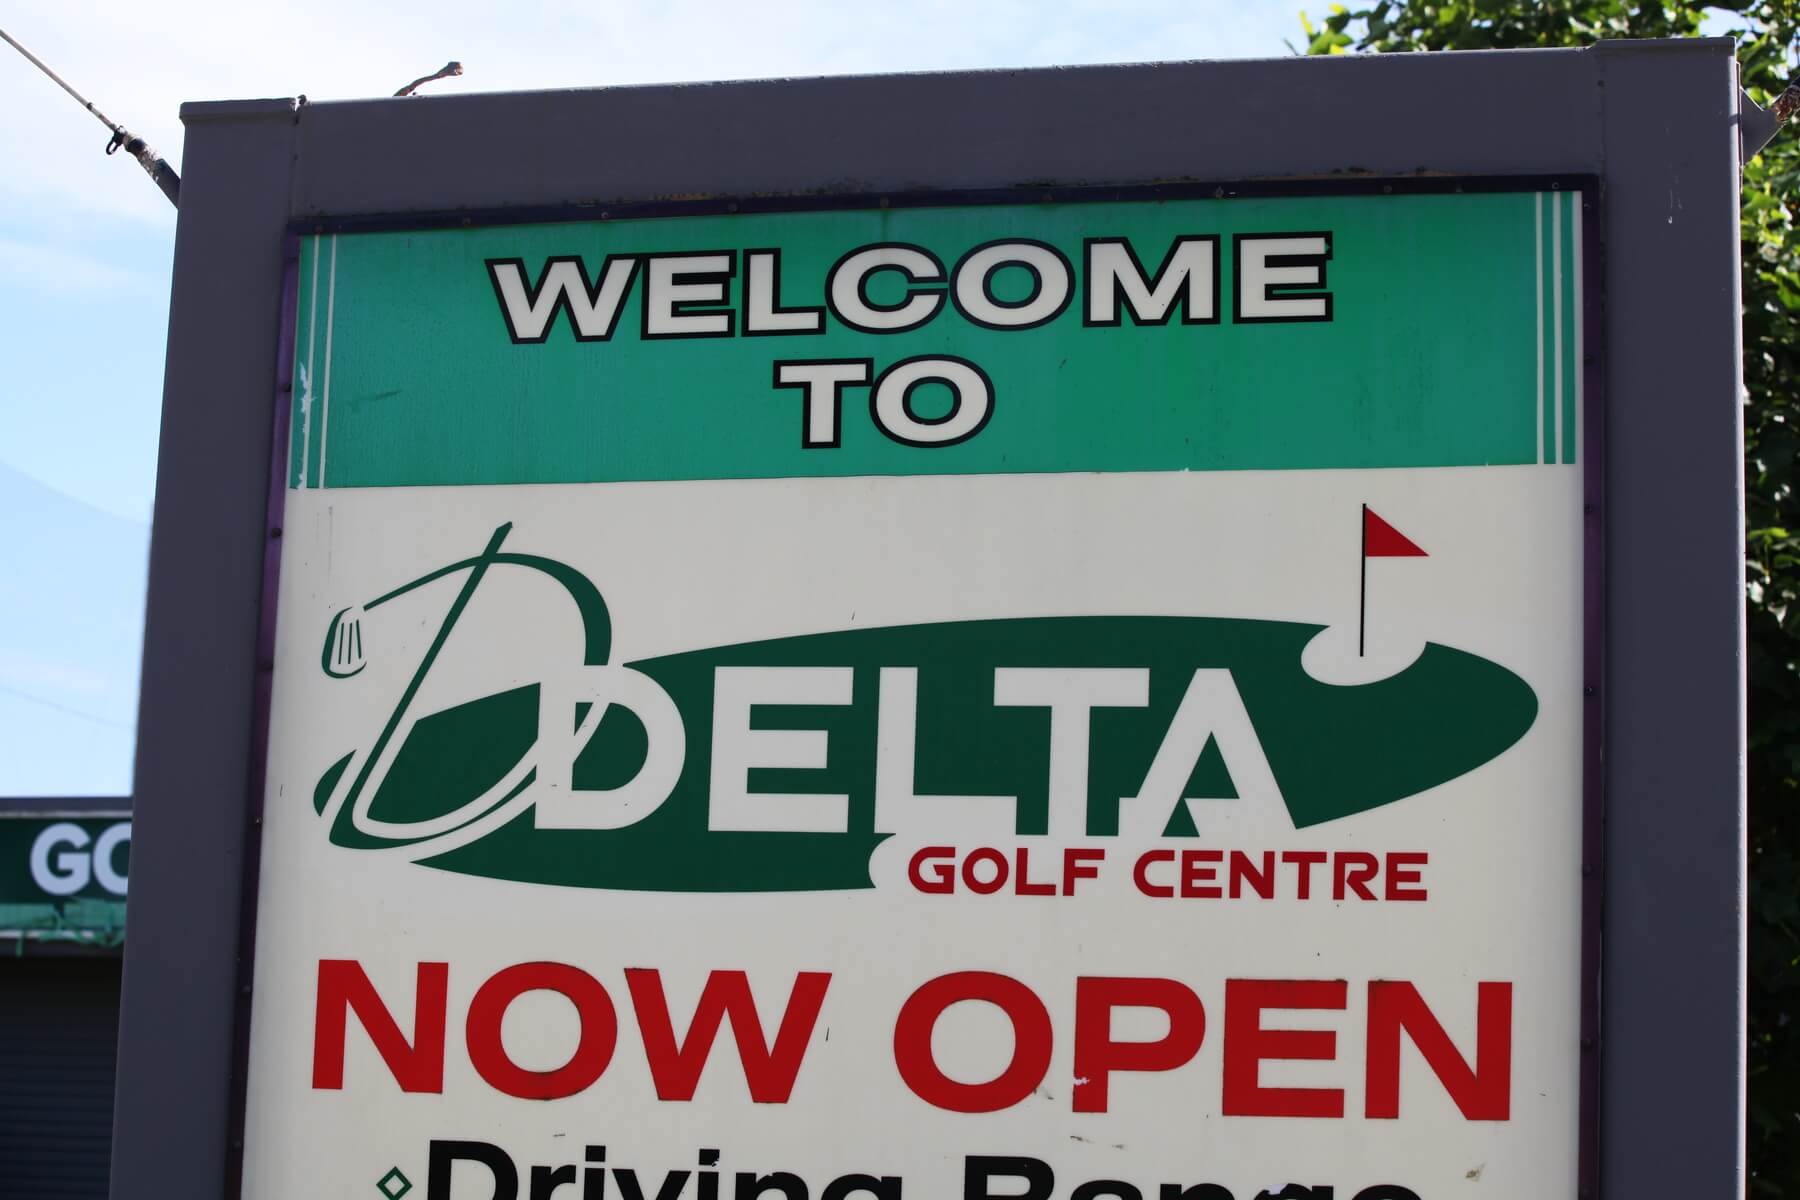 Delta Golf Club